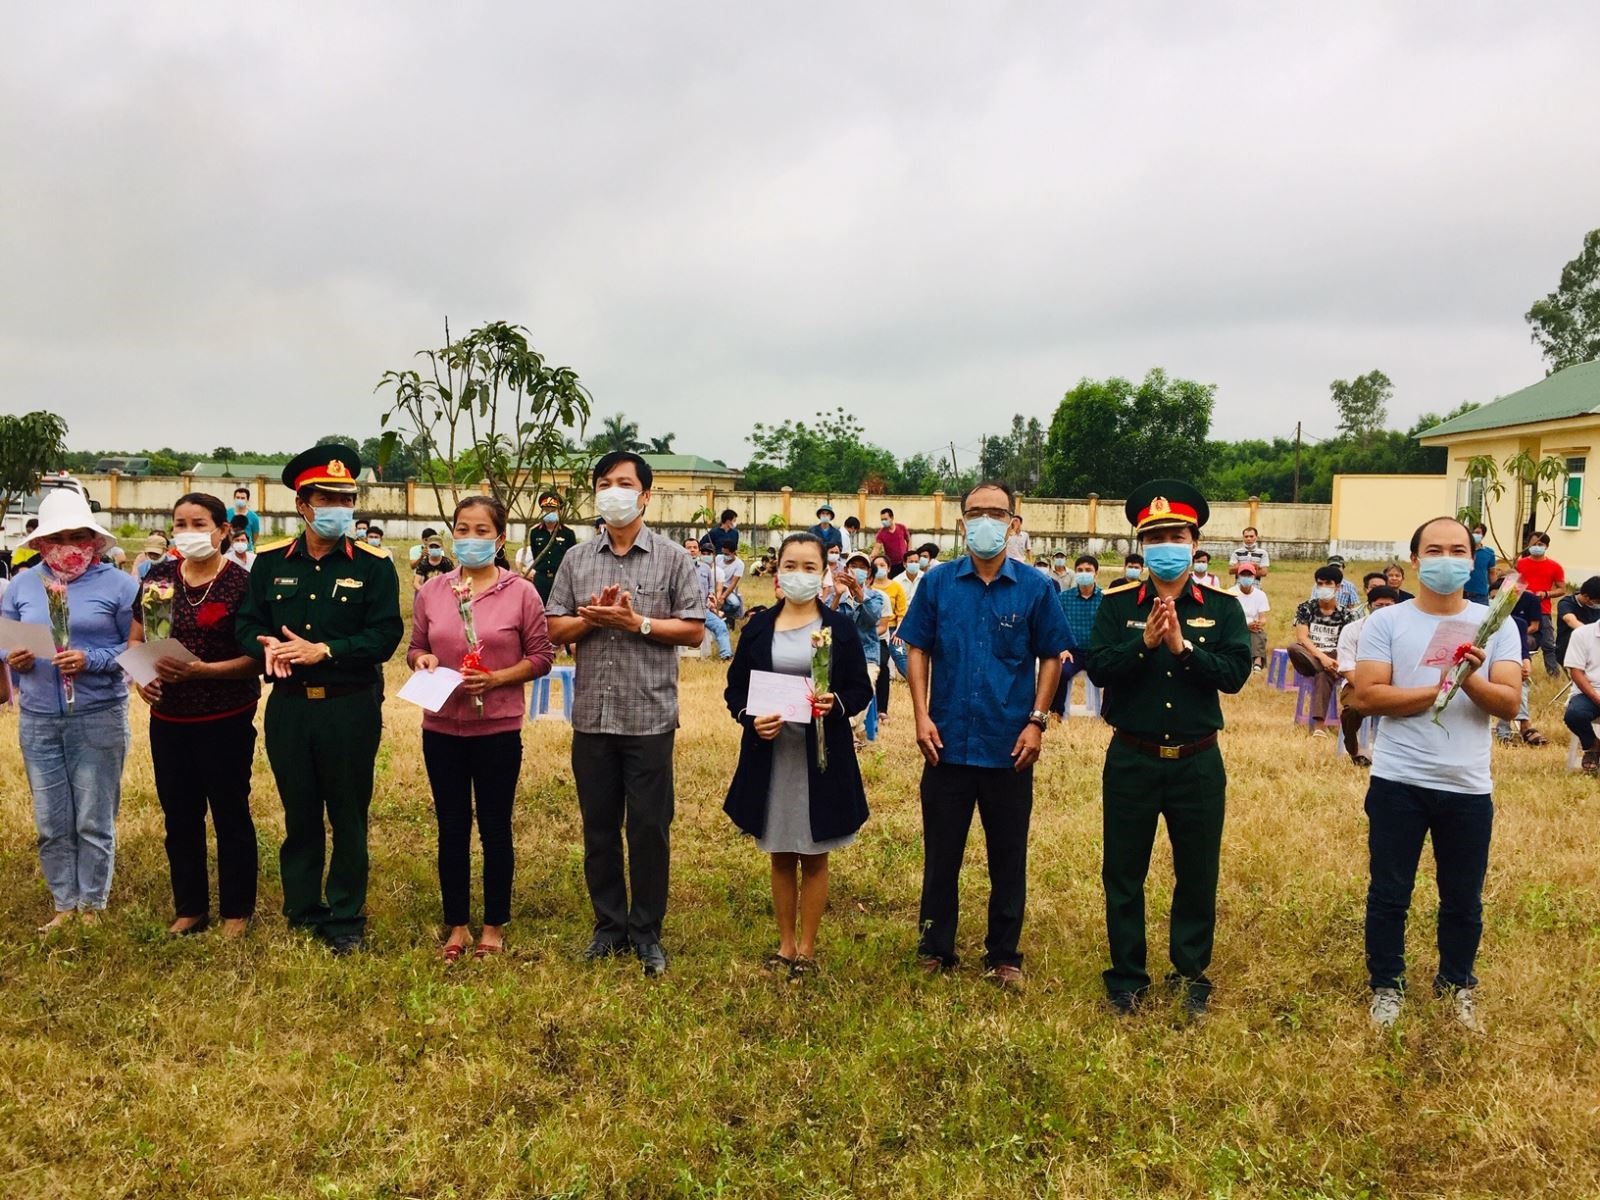 Phó Chủ tịch UBND tỉnh Hoàng Nam trao giấy chứng nhận cho các công dân hoàn thành thời gian cách ly tại Trung đoàn 8, Sư đoàn 968